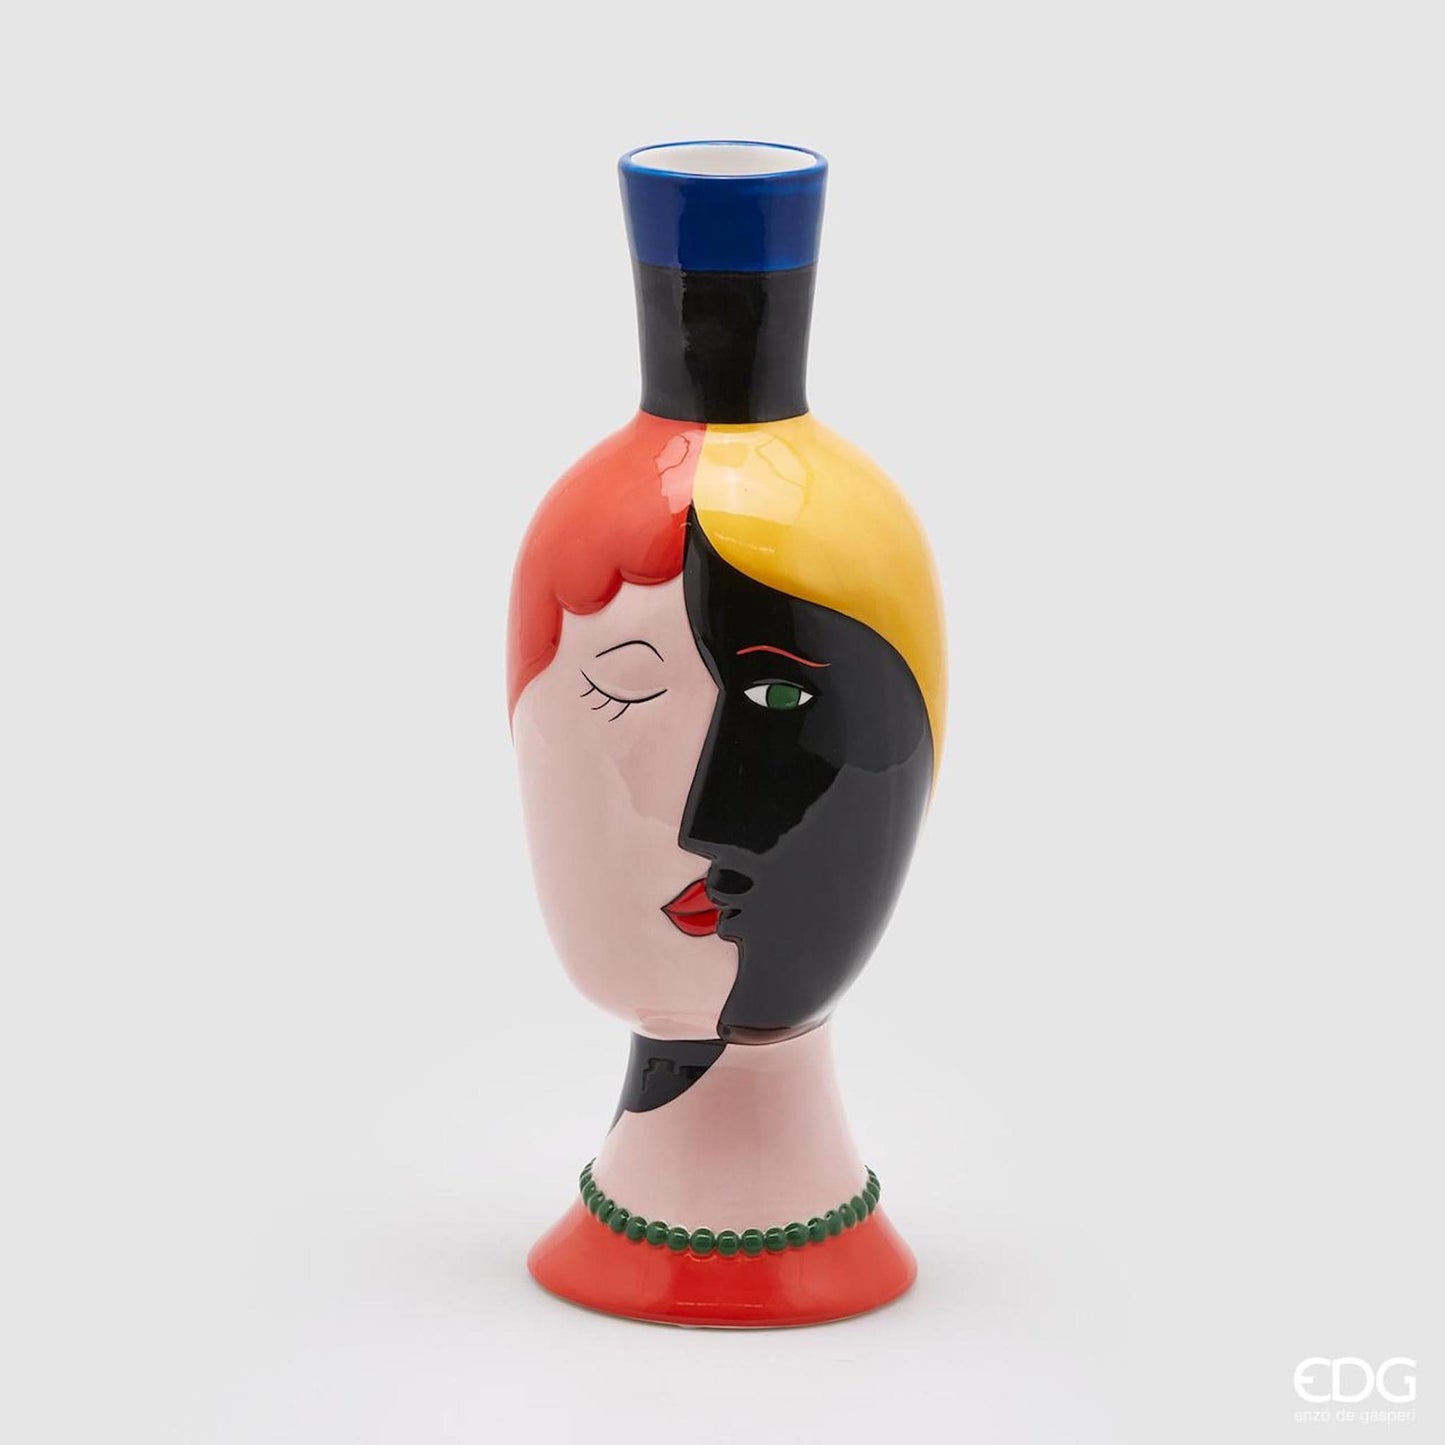 Italiving Keramikvase Dekovase Picasso III - Profile von 2 Frauen - Keramik H 35 cm Ø 13 cm